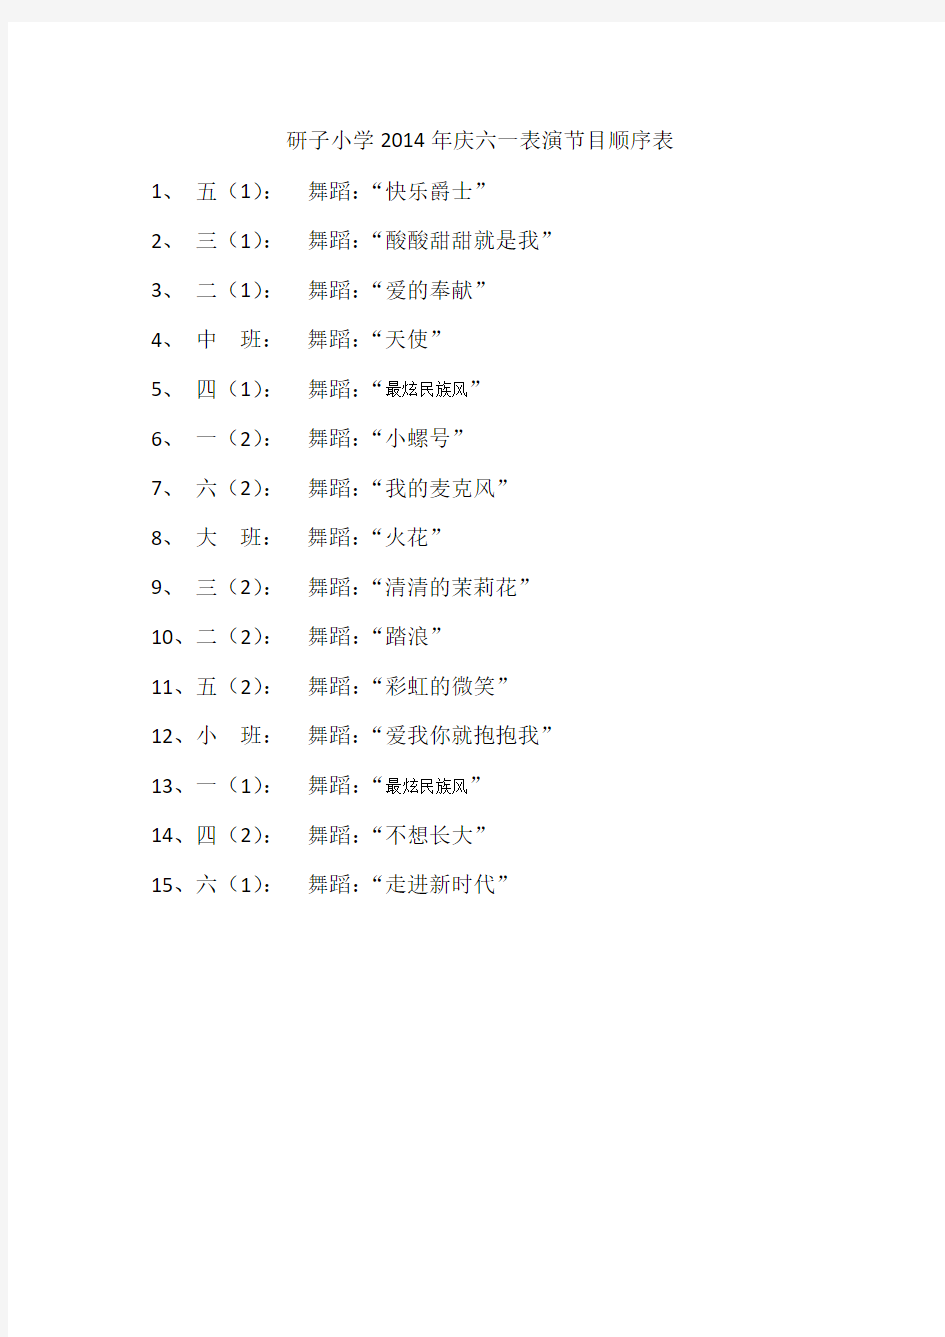 研子小学2014年庆六一表演节目顺序表